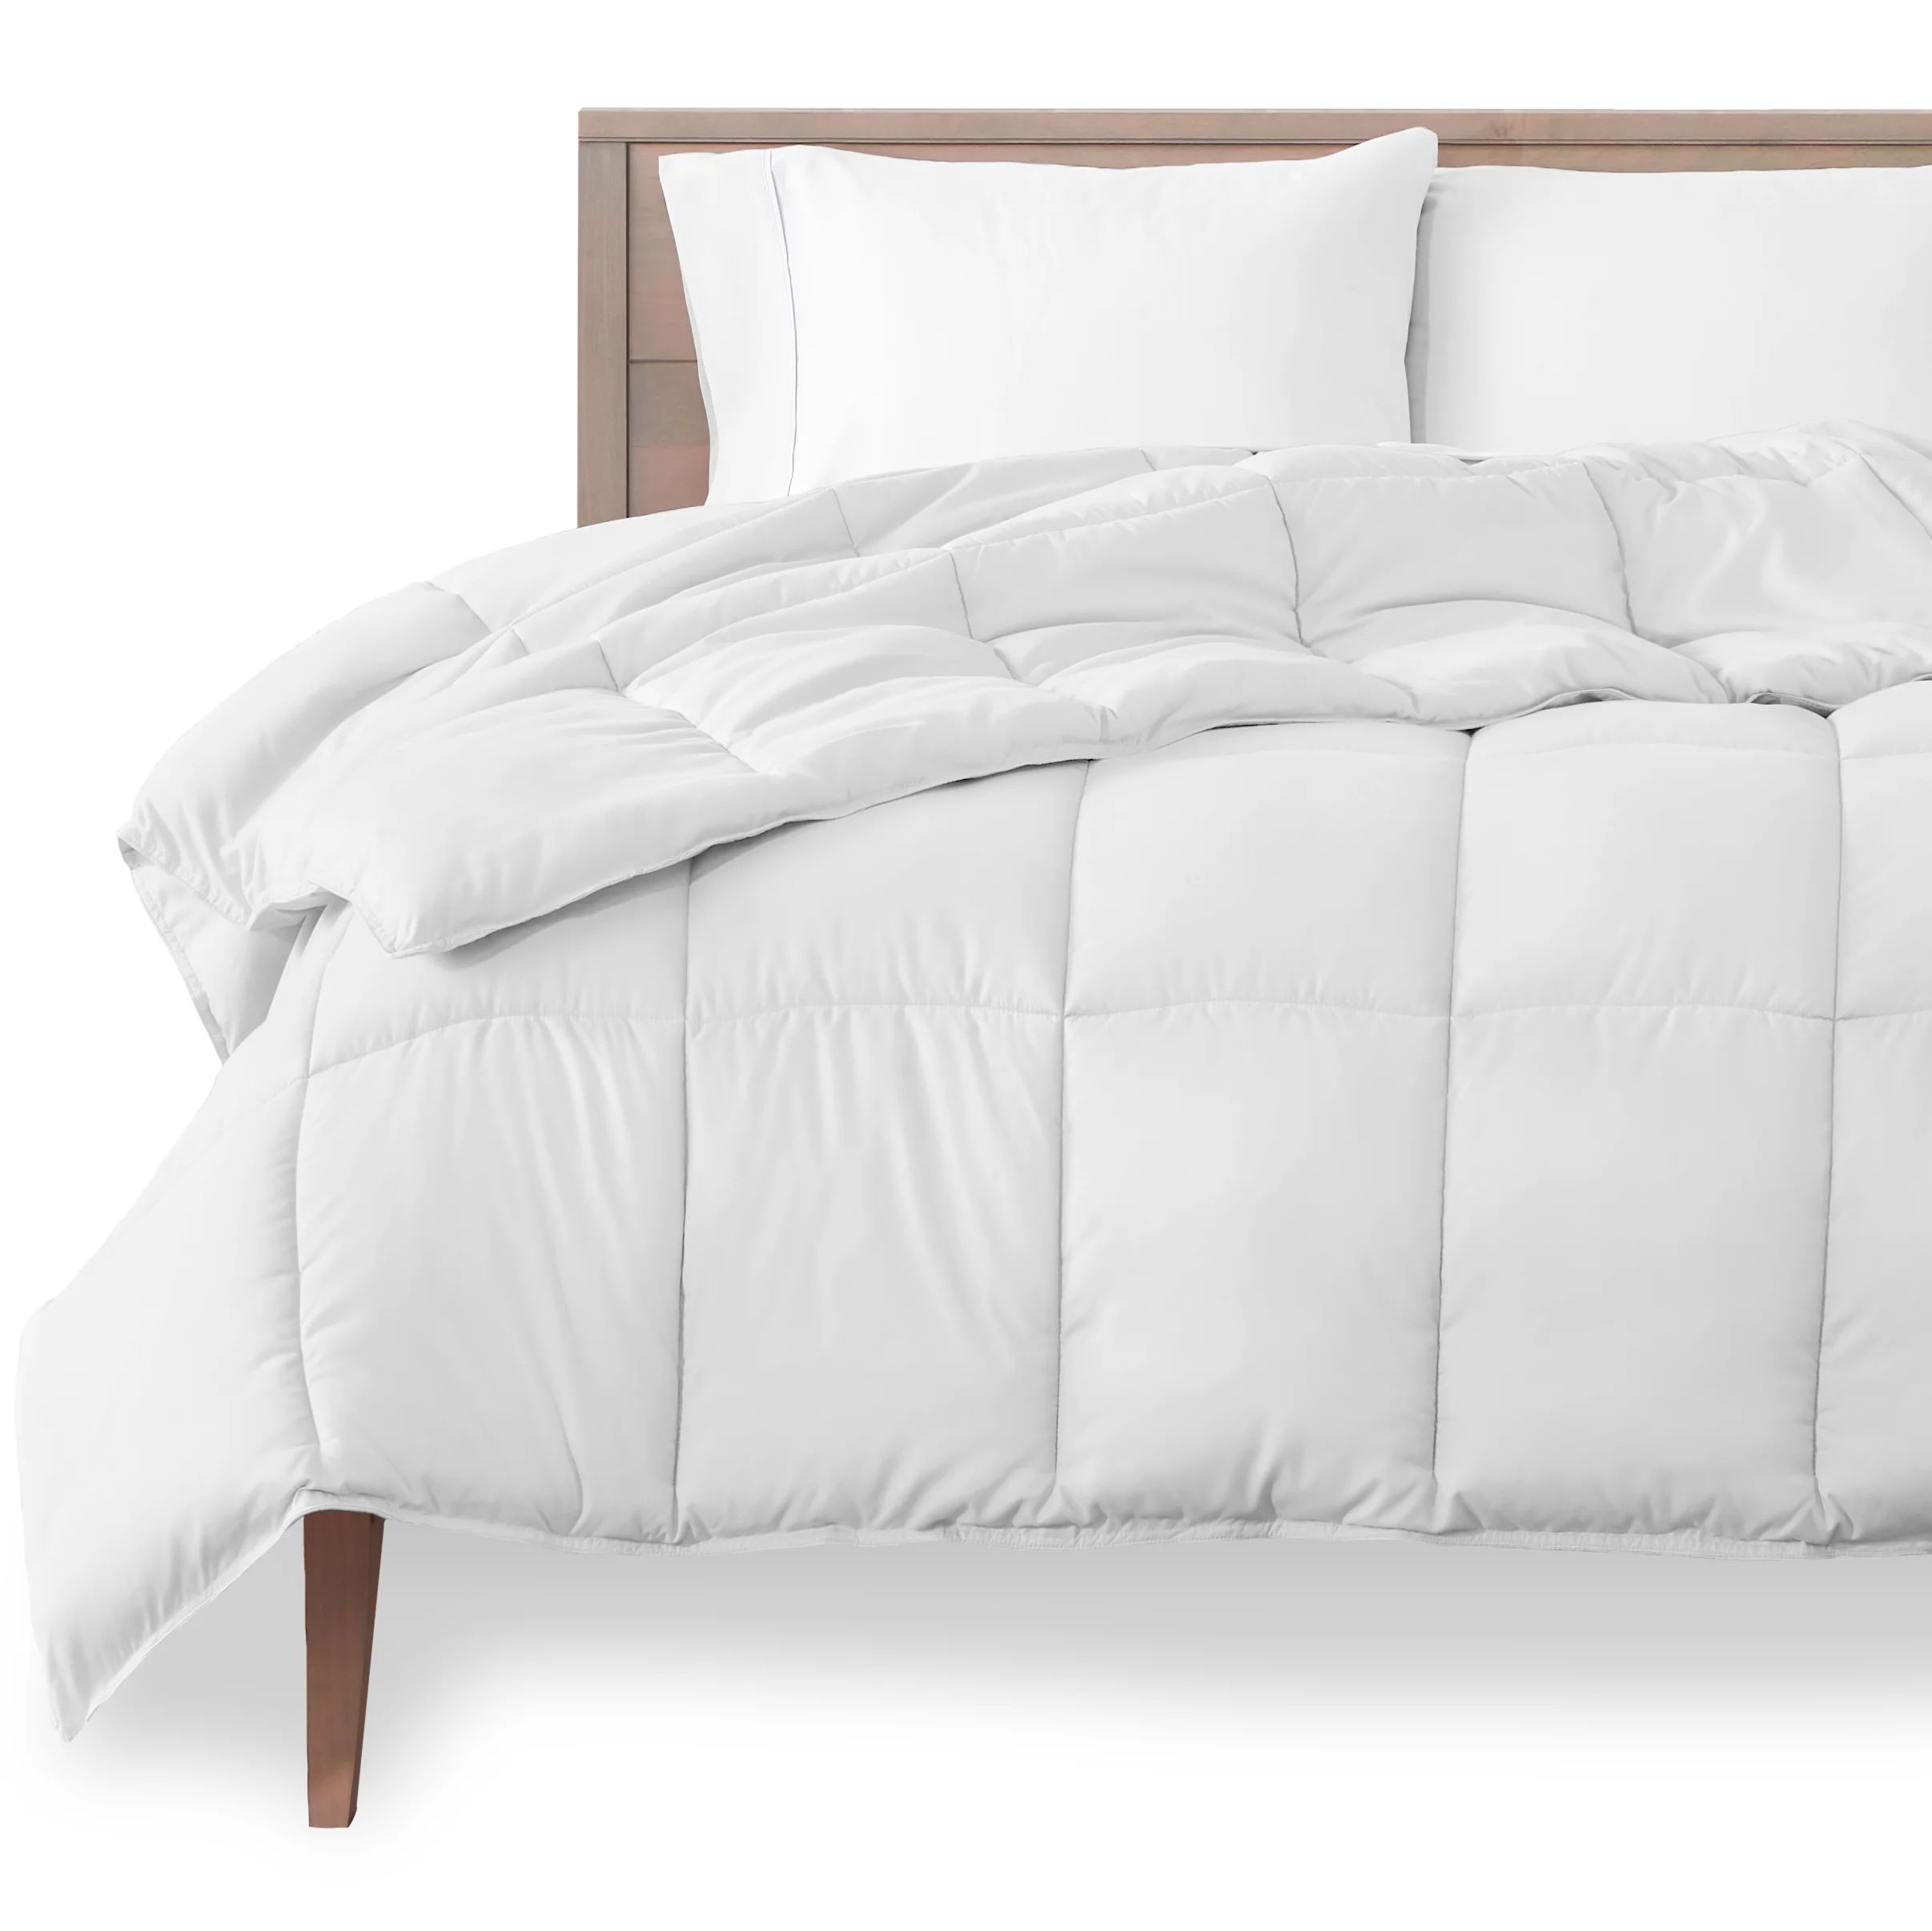 Bare Home Goose Down Alternative Comforter Duvet Insert, Queen, White | Walmart (US)